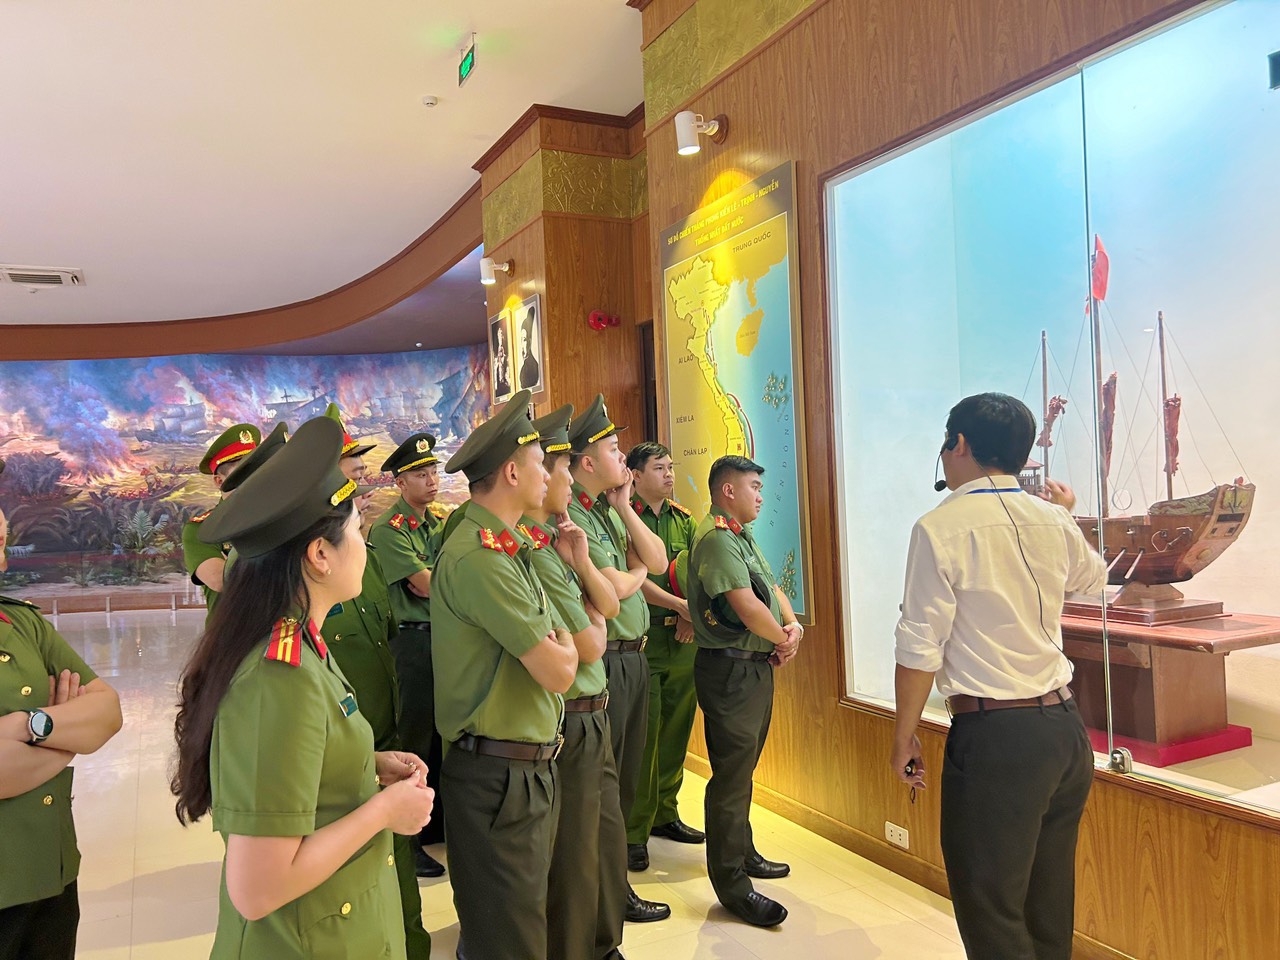 Hướng dẫn viên thông tin về tư liệu lịch sử qua các hiện vật, mô hình tại Bảo tàng vua Quang Trung